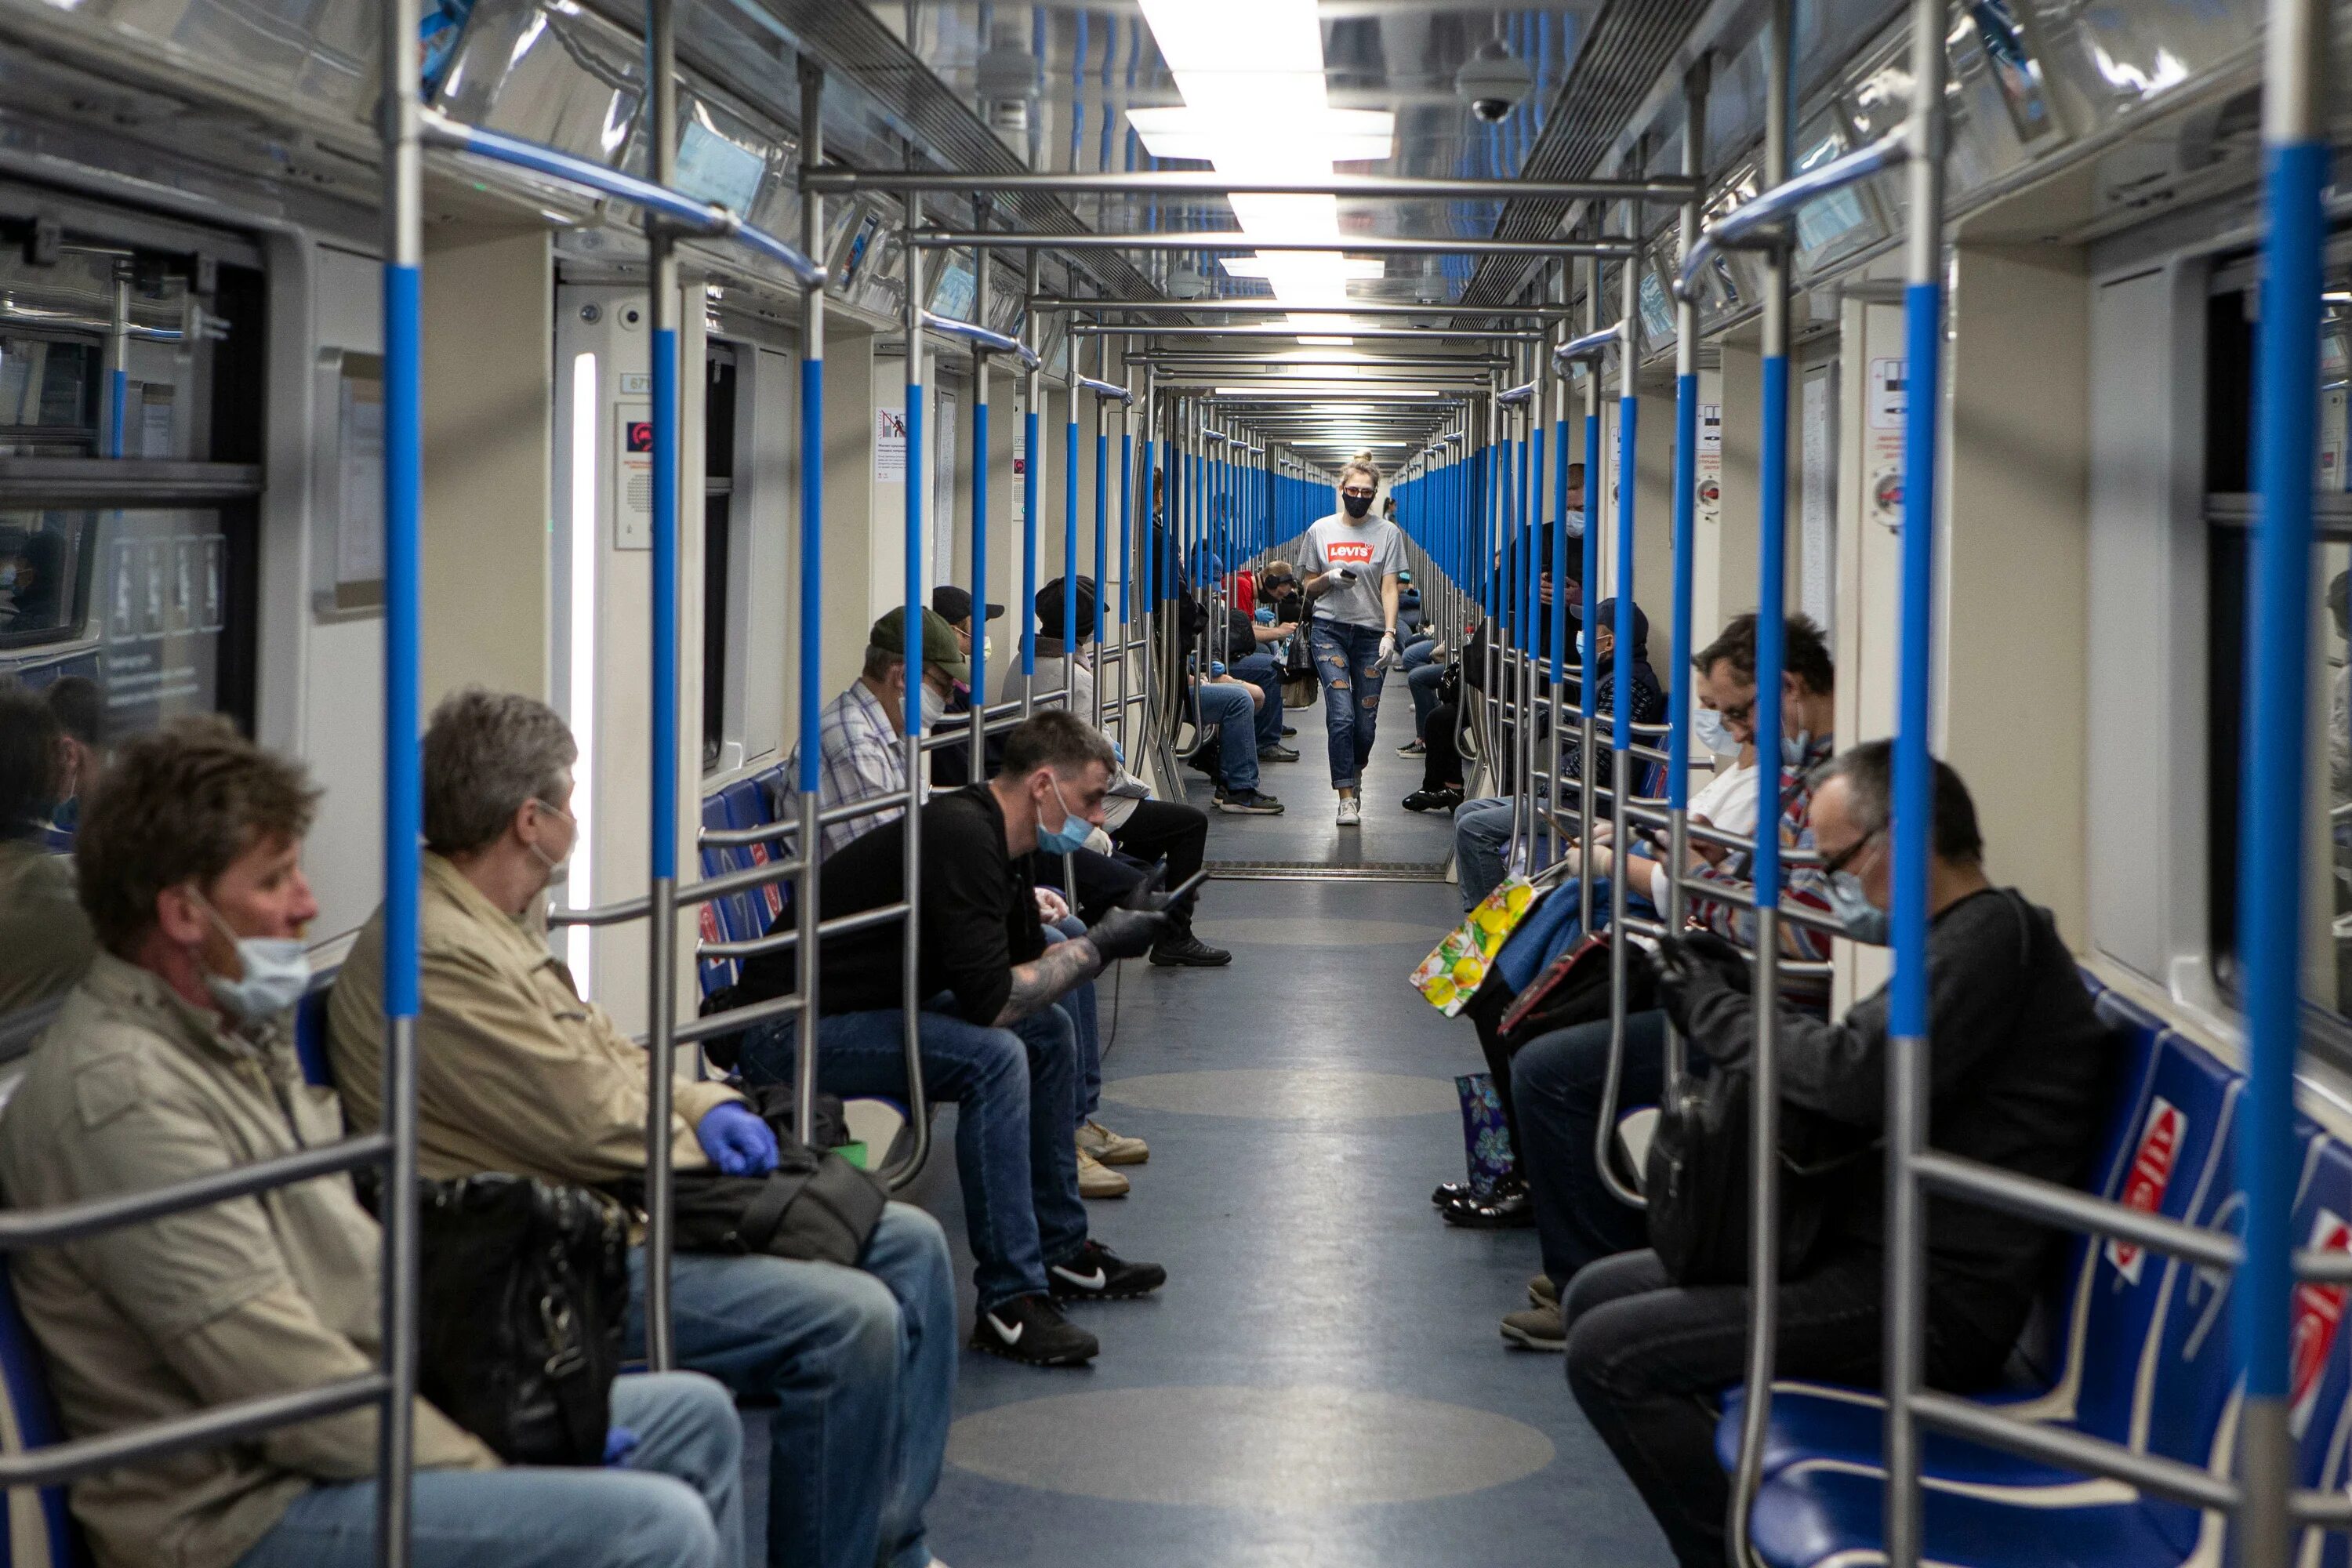 Сколько пассажиров в метро. Пассажиры метро. Пассажирское метро. Пассажиры в метро фото. Москва метро с пассажирами фото.